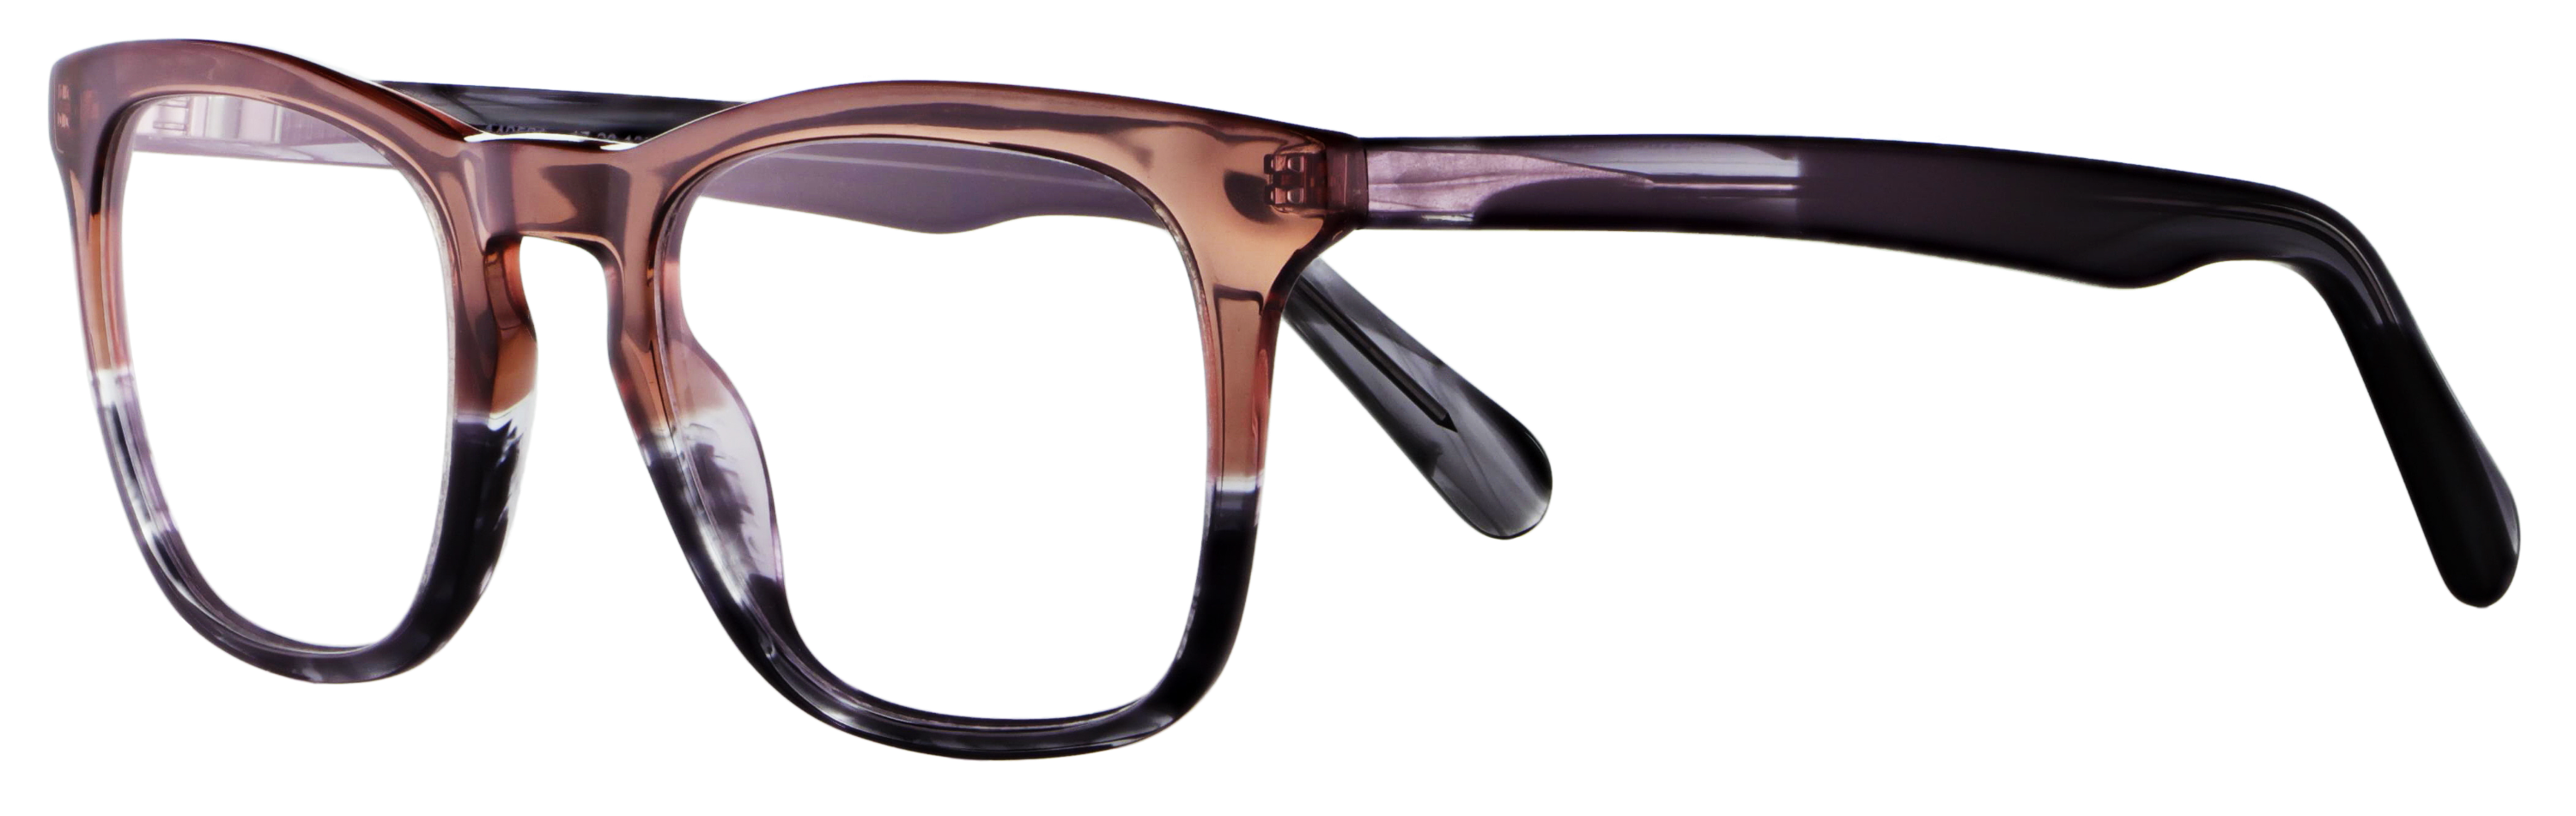 Das Bild zeigt die Korrektionsbrille 140501 von der Marke Abele Optik in rot / grau transparent.